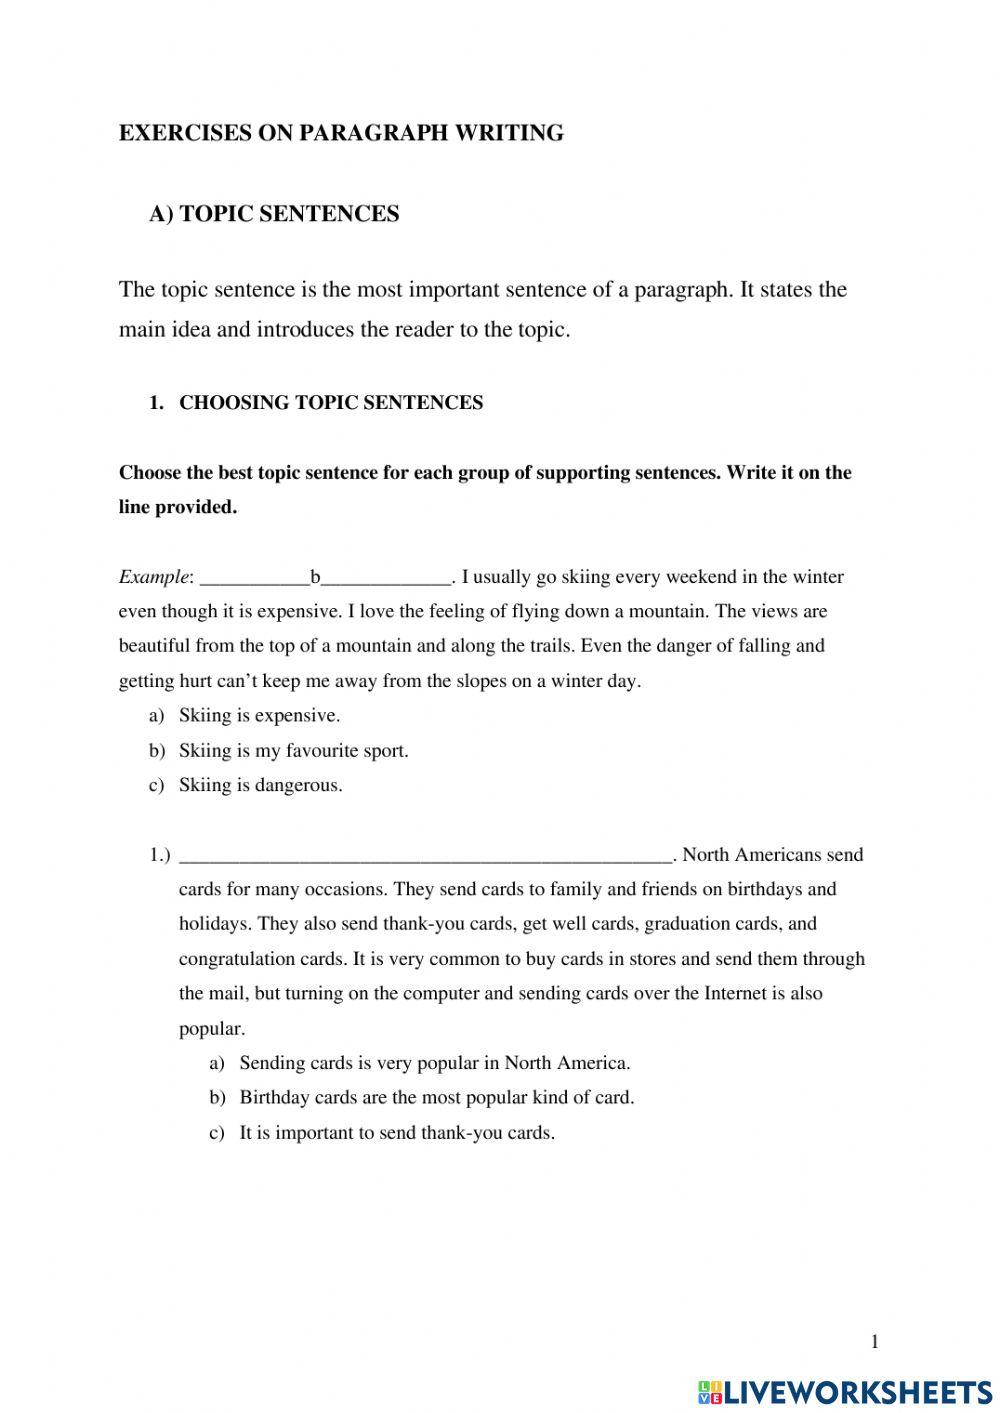 topic-sentence-concluding-sentence-worksheet-live-worksheets